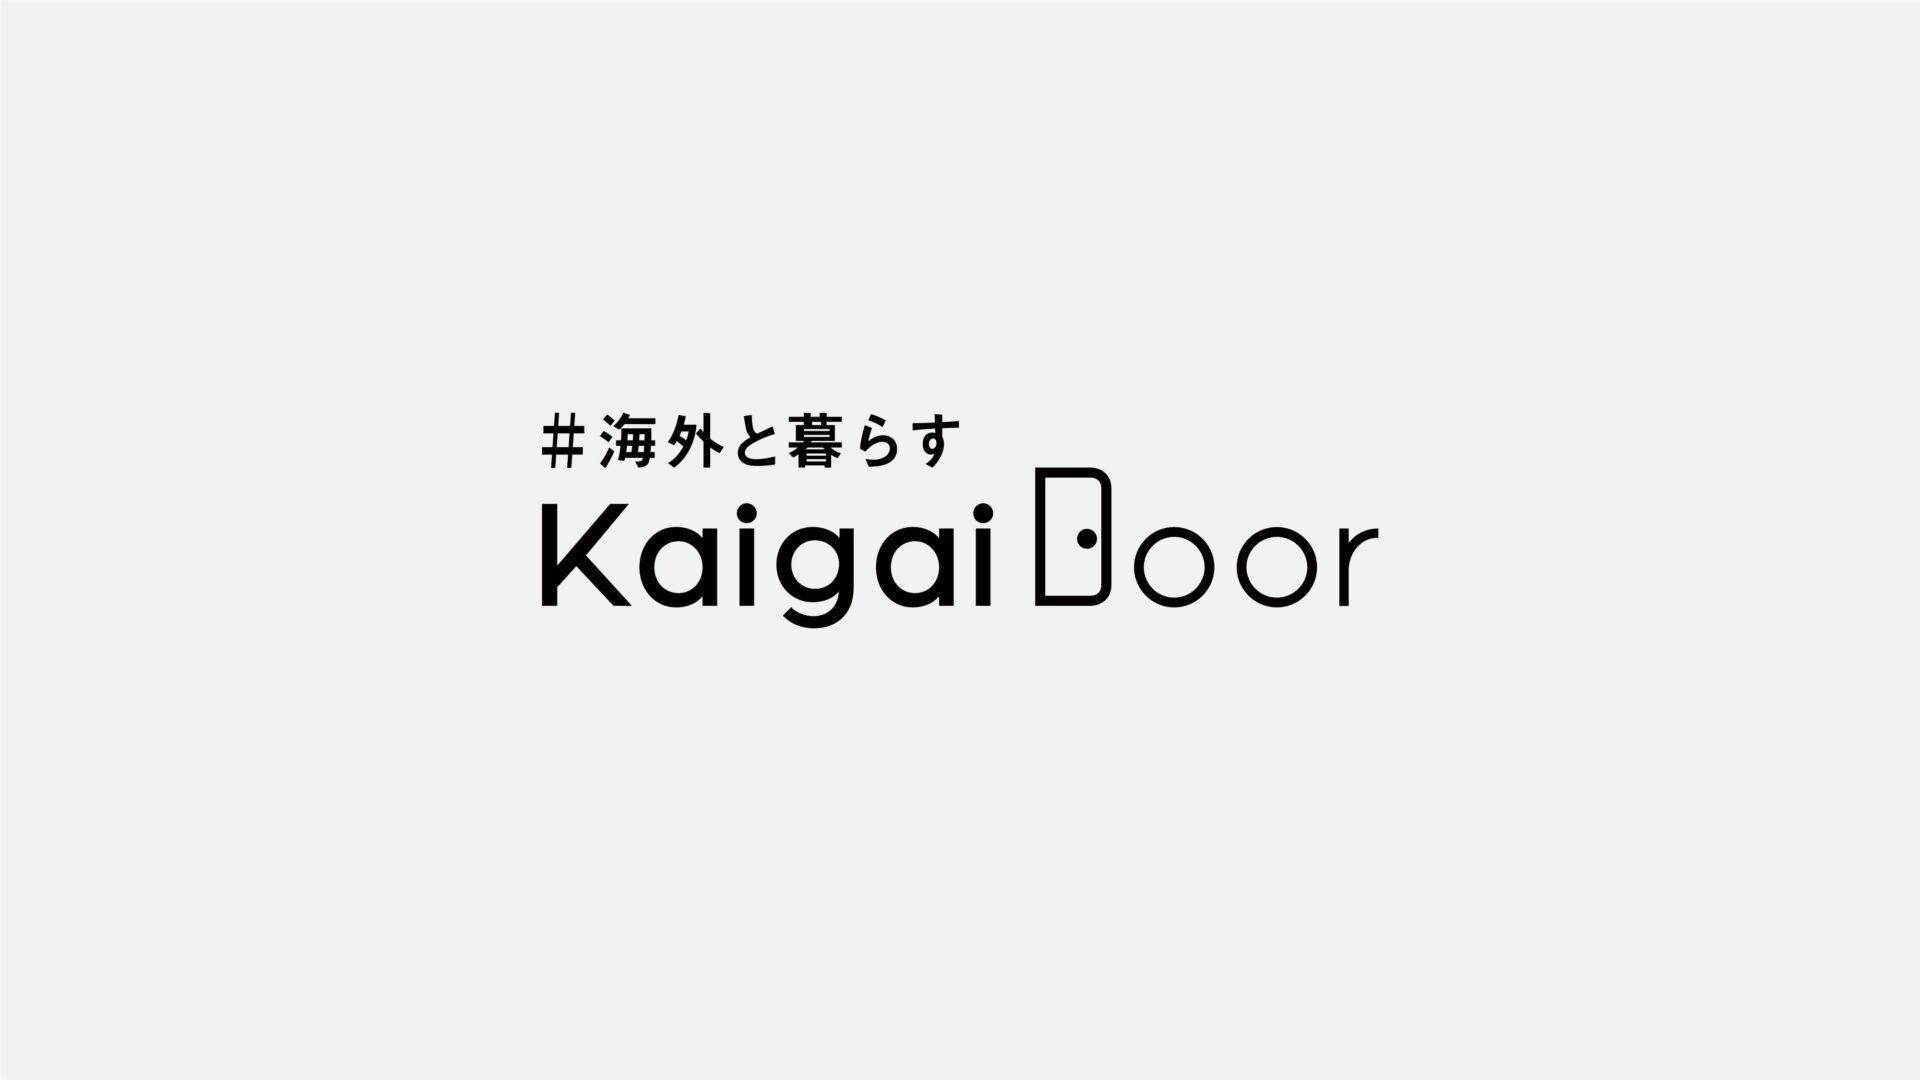 「KAIGAIDOOR」のサムネイル画像